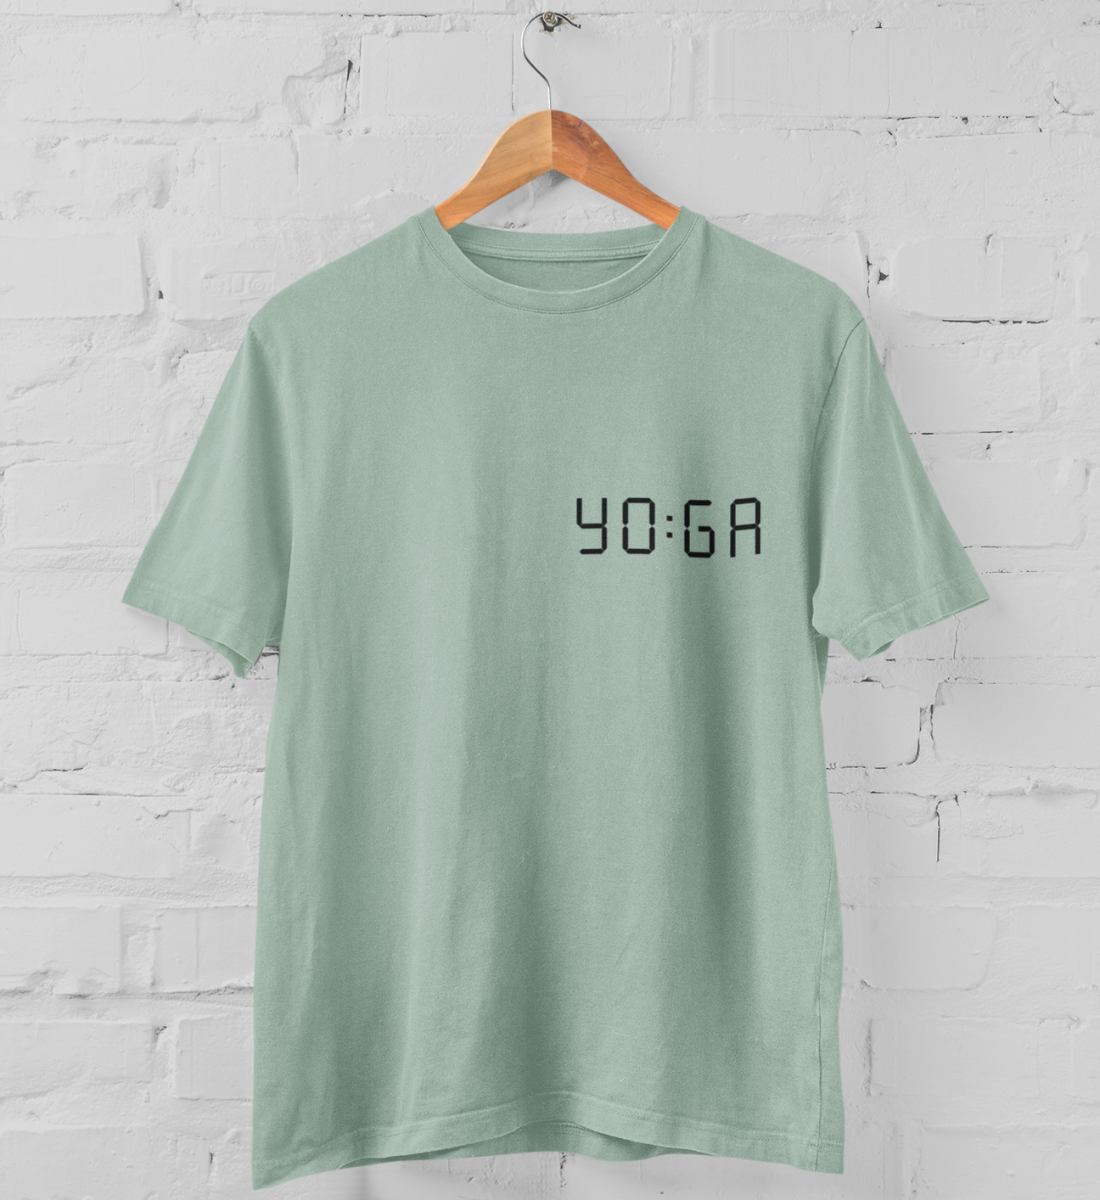 zeit für yoga l yoga t-shirt mintgrün l yoga oberteil l schöne yoga kleidung l nachhaltig und umweltfreundliche produkte online shoppen